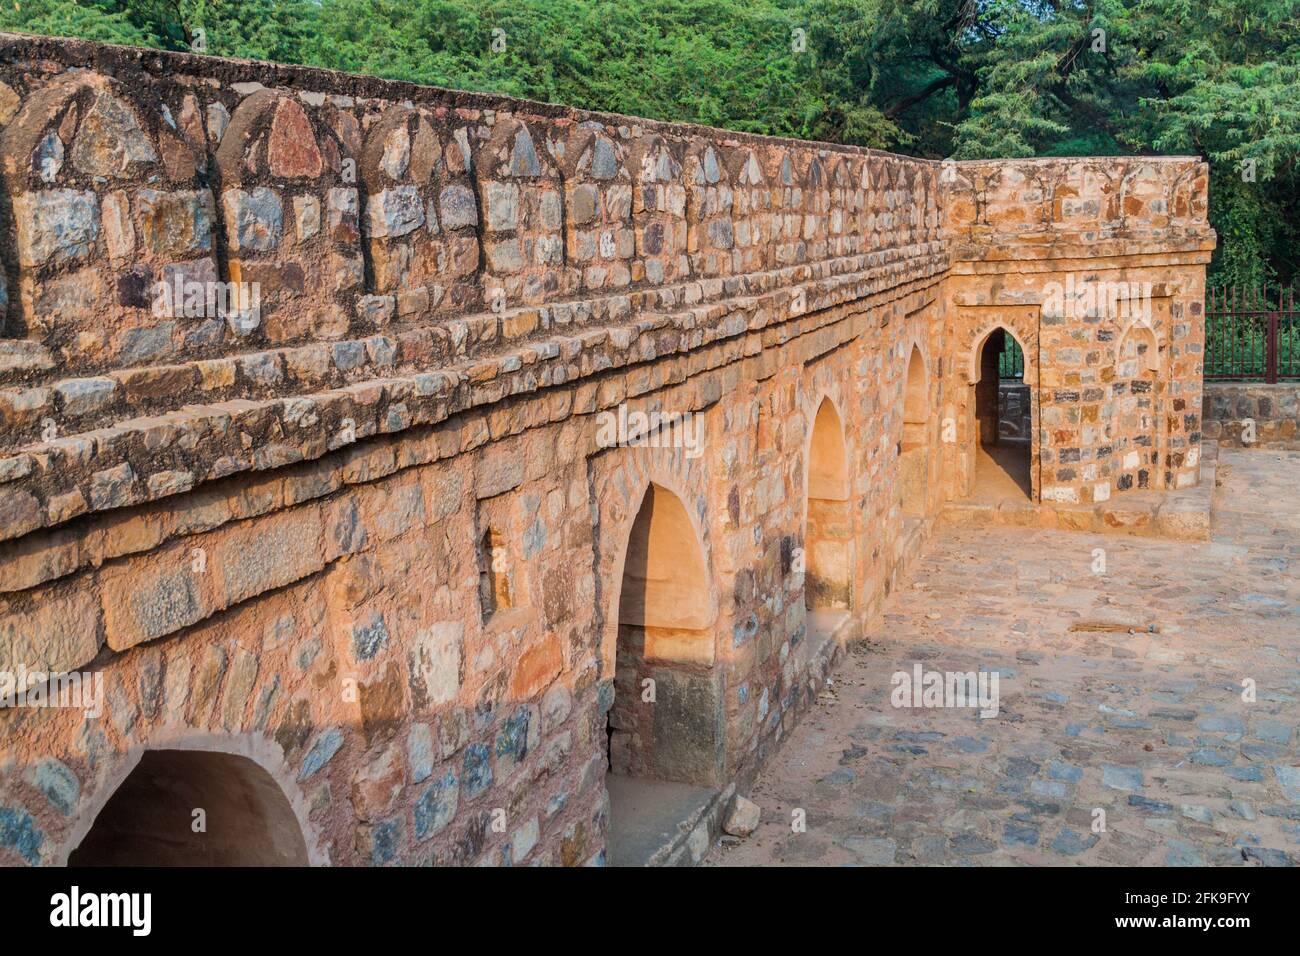 Le mur extérieur de Rajon Ki Baoli se trouve dans le parc archéologique de Mehrauli à Delhi, en Inde Banque D'Images